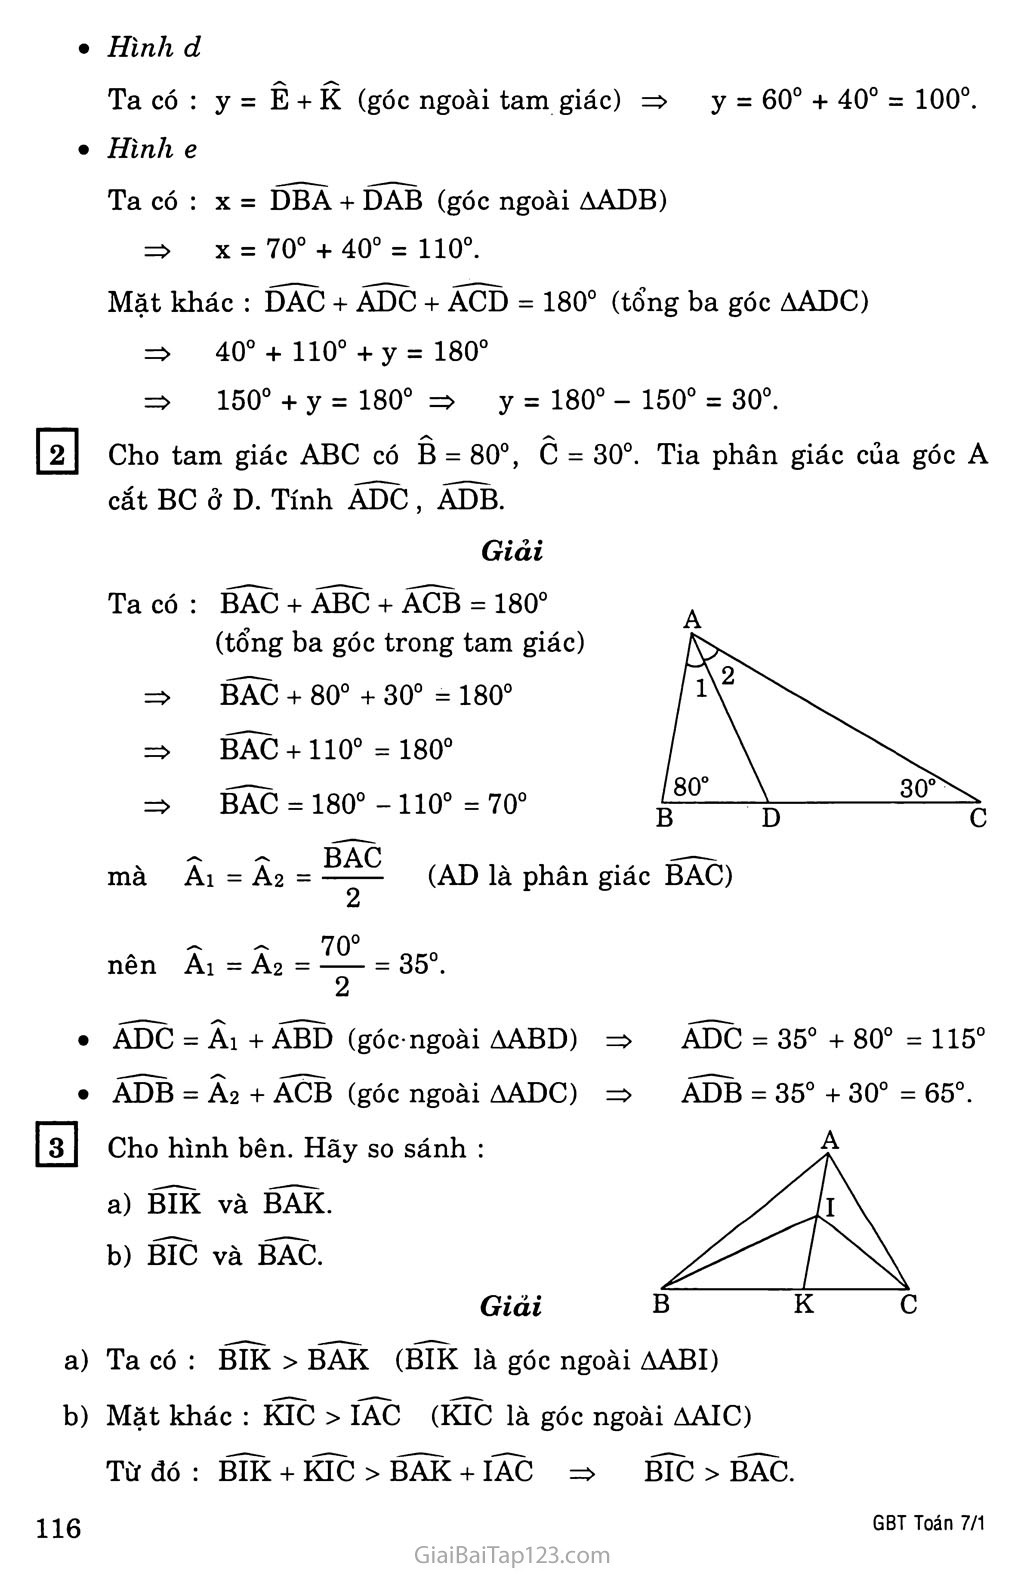 §1. Tổng ba góc của một tam giác trang 3